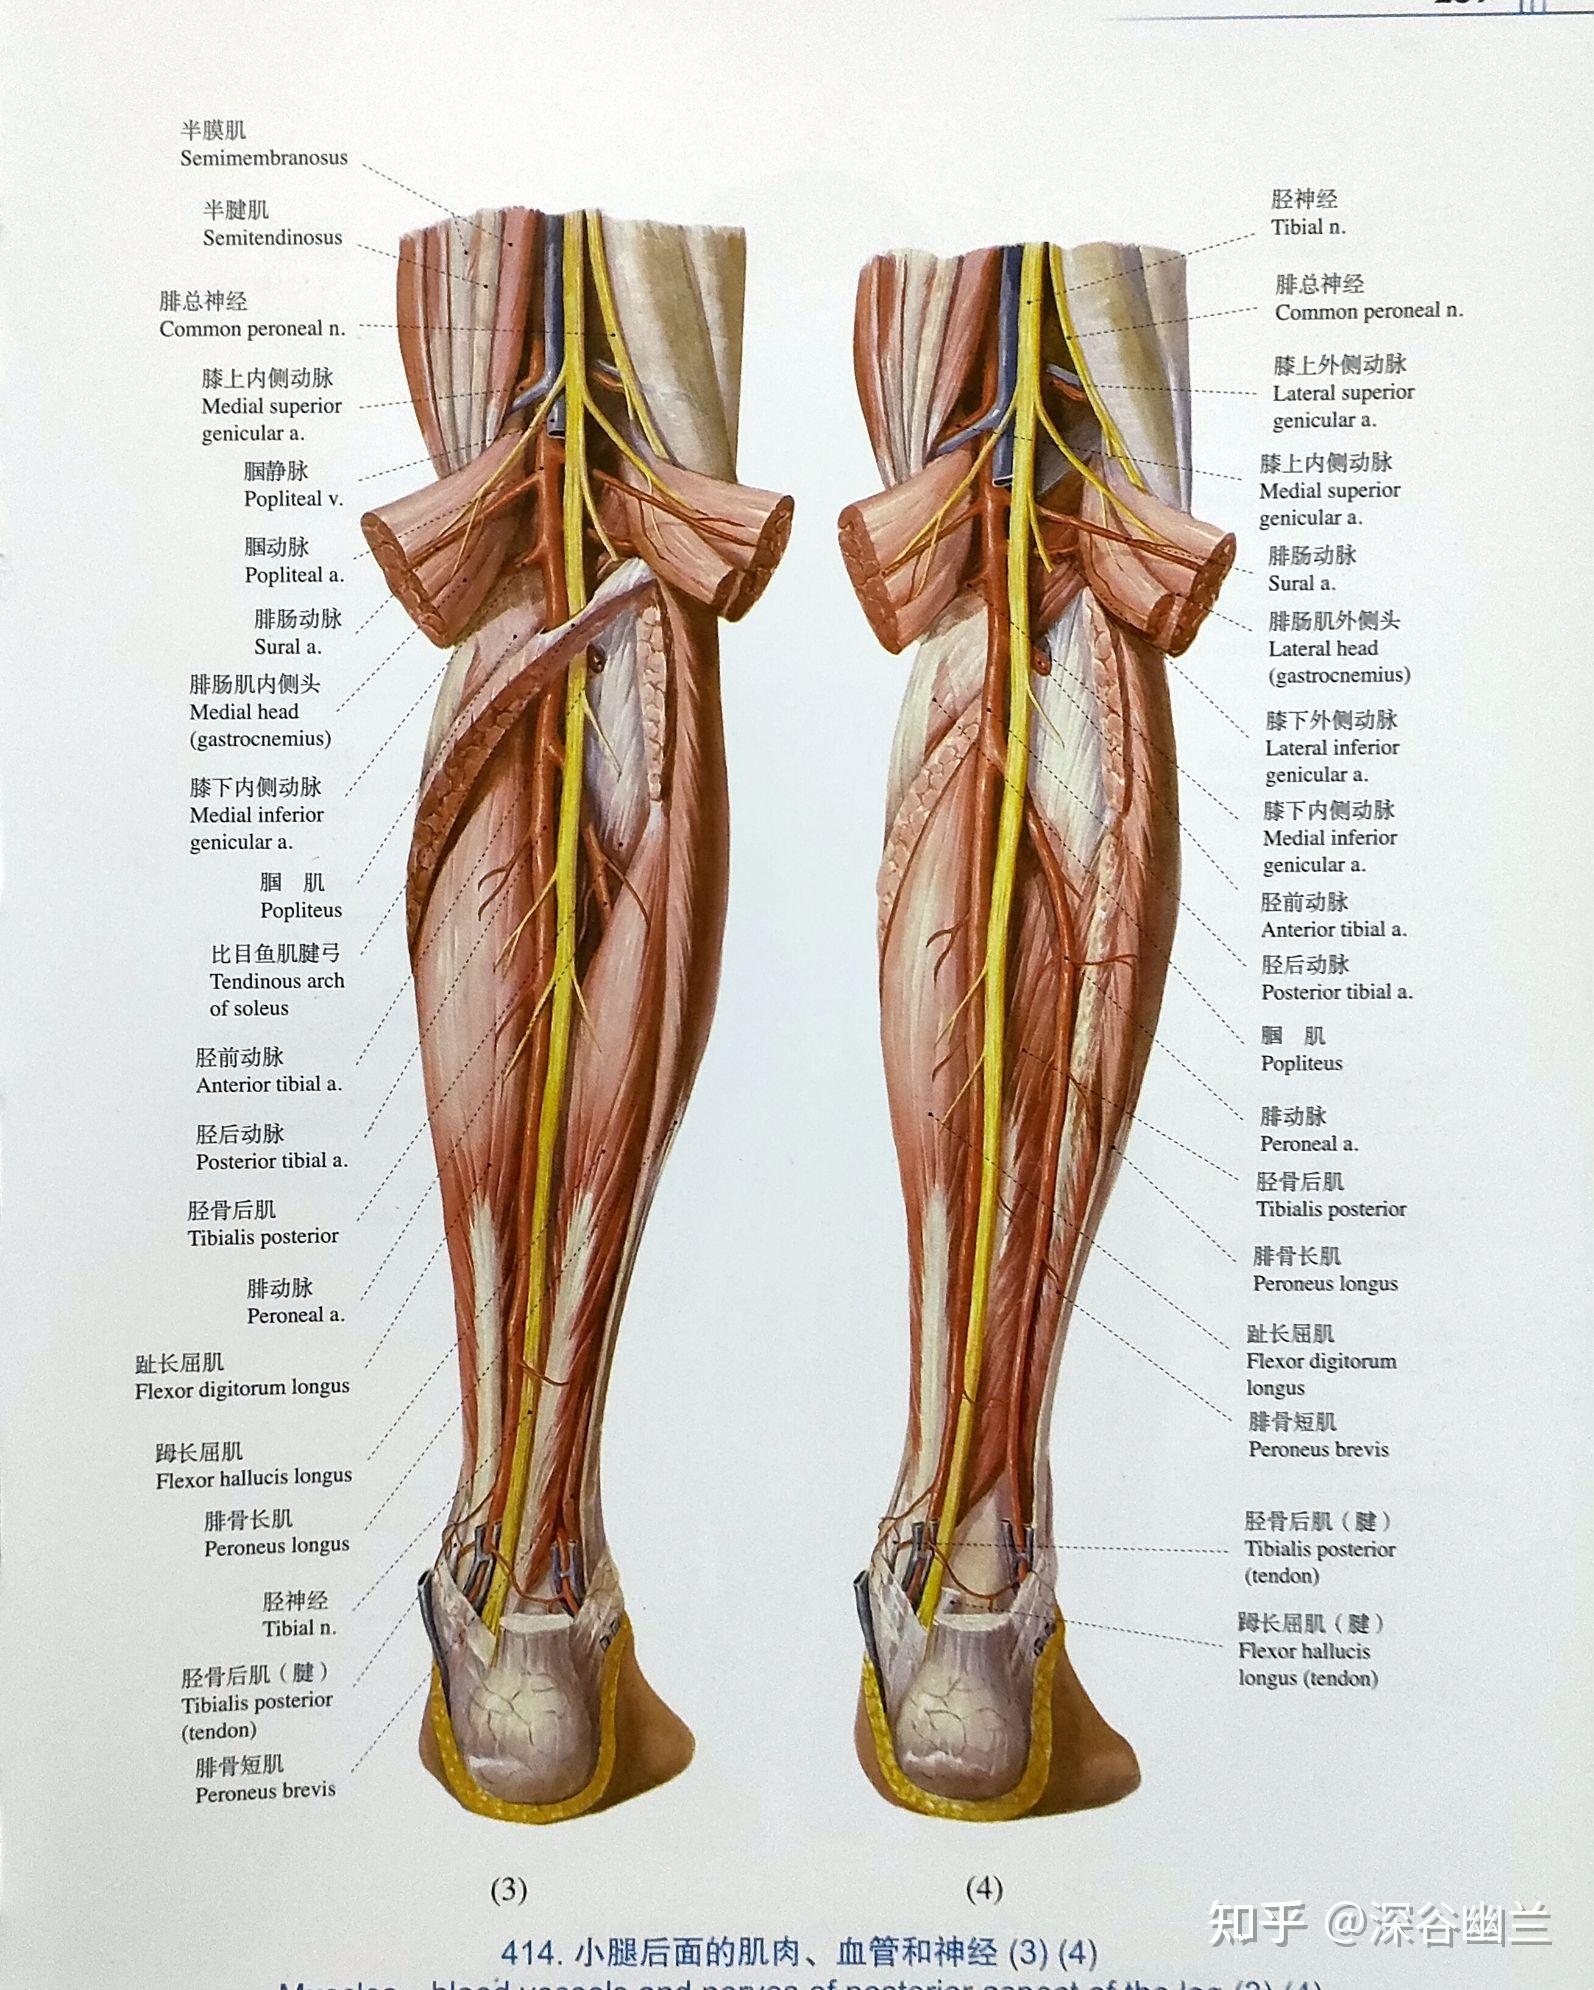 有腘筋膜,皮下有股腘静脉,深层内侧为腘静脉,最深层为腘动脉,布有股后